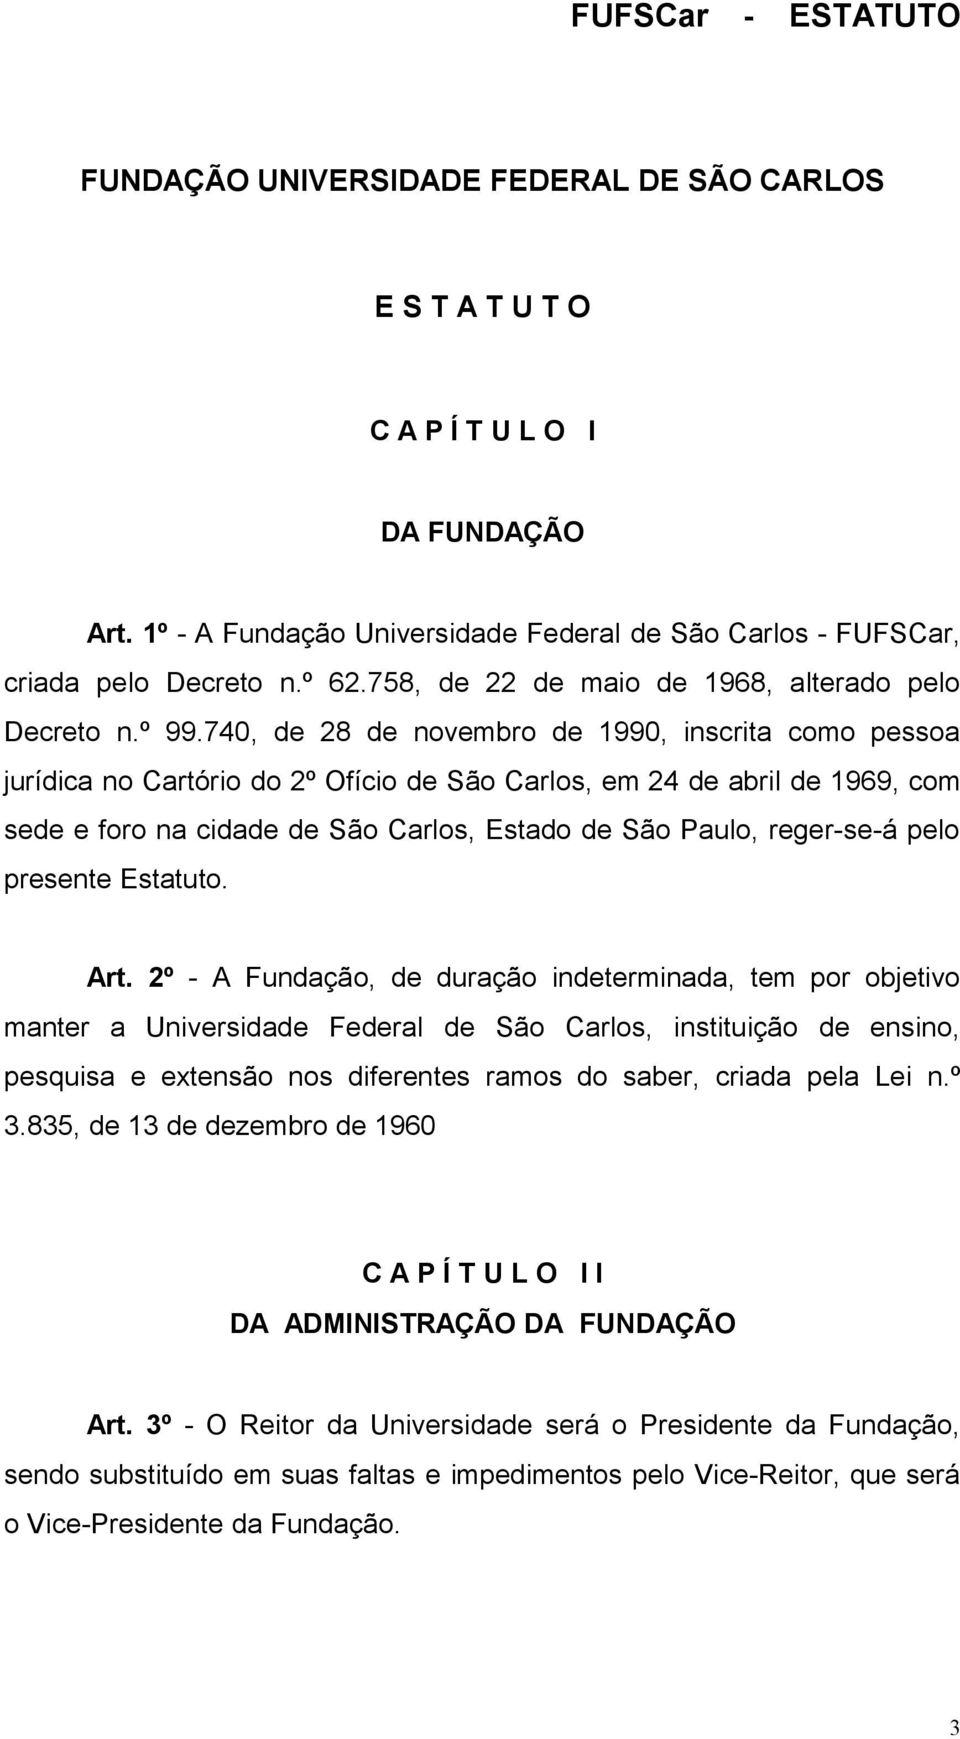 740, de 28 de novembro de 1990, inscrita como pessoa jurídica no Cartório do 2º Ofício de São Carlos, em 24 de abril de 1969, com sede e foro na cidade de São Carlos, Estado de São Paulo, reger-se-á